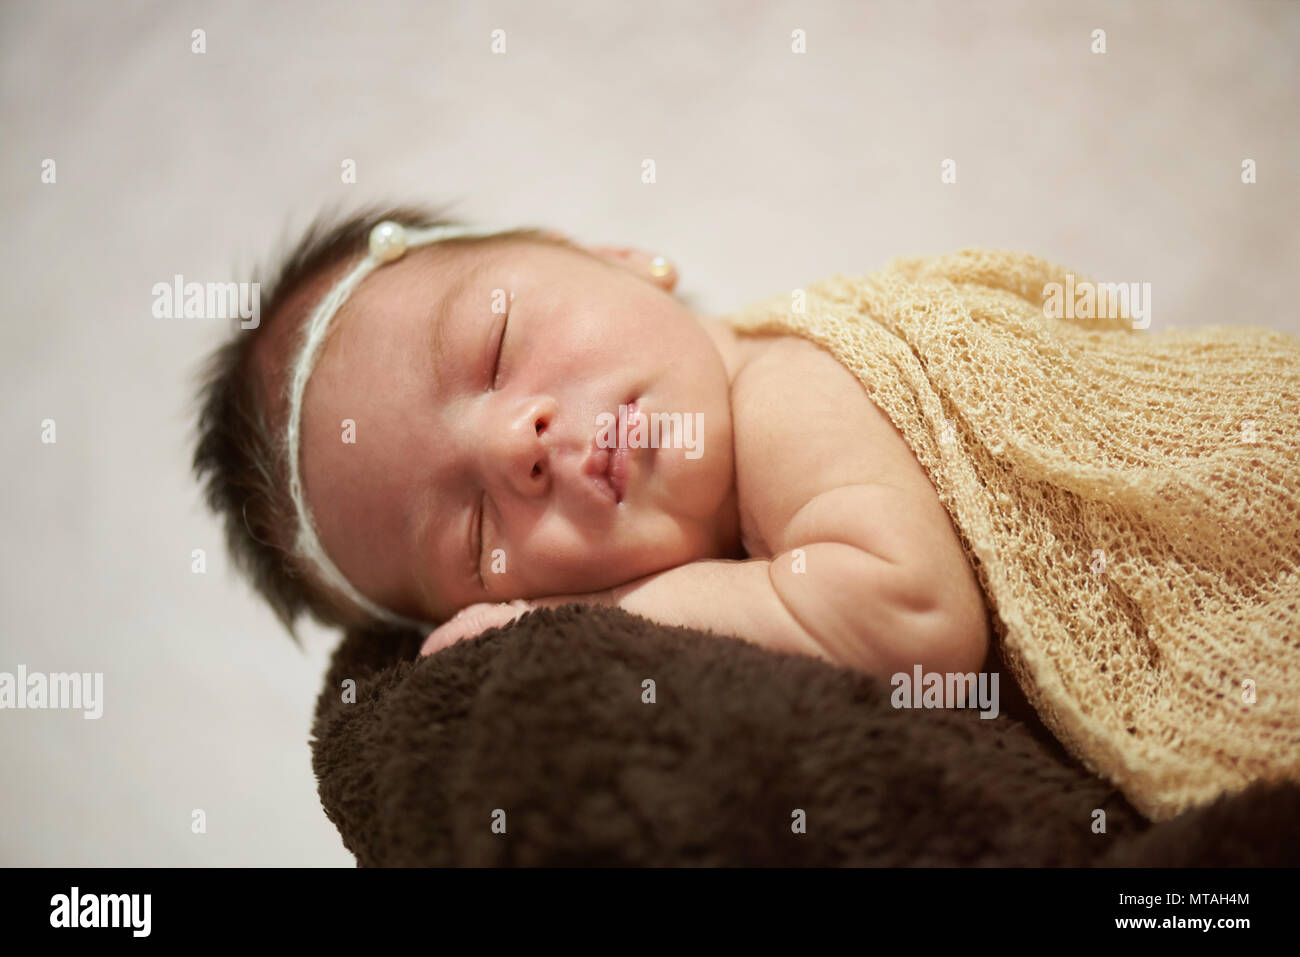 Neugeborenes Baby unter nap Nahaufnahme auf hellen Hintergrund Stockfoto